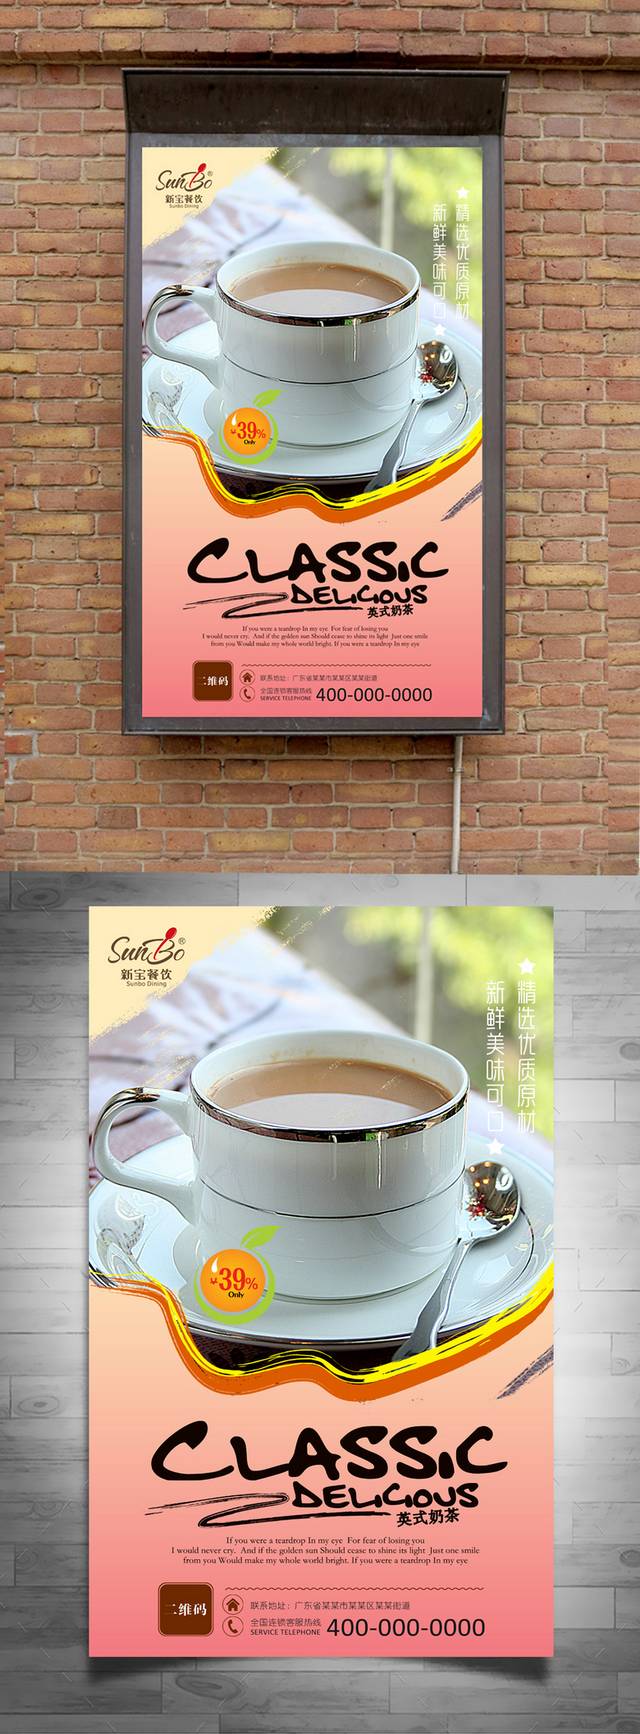 英式奶茶精美海报设计